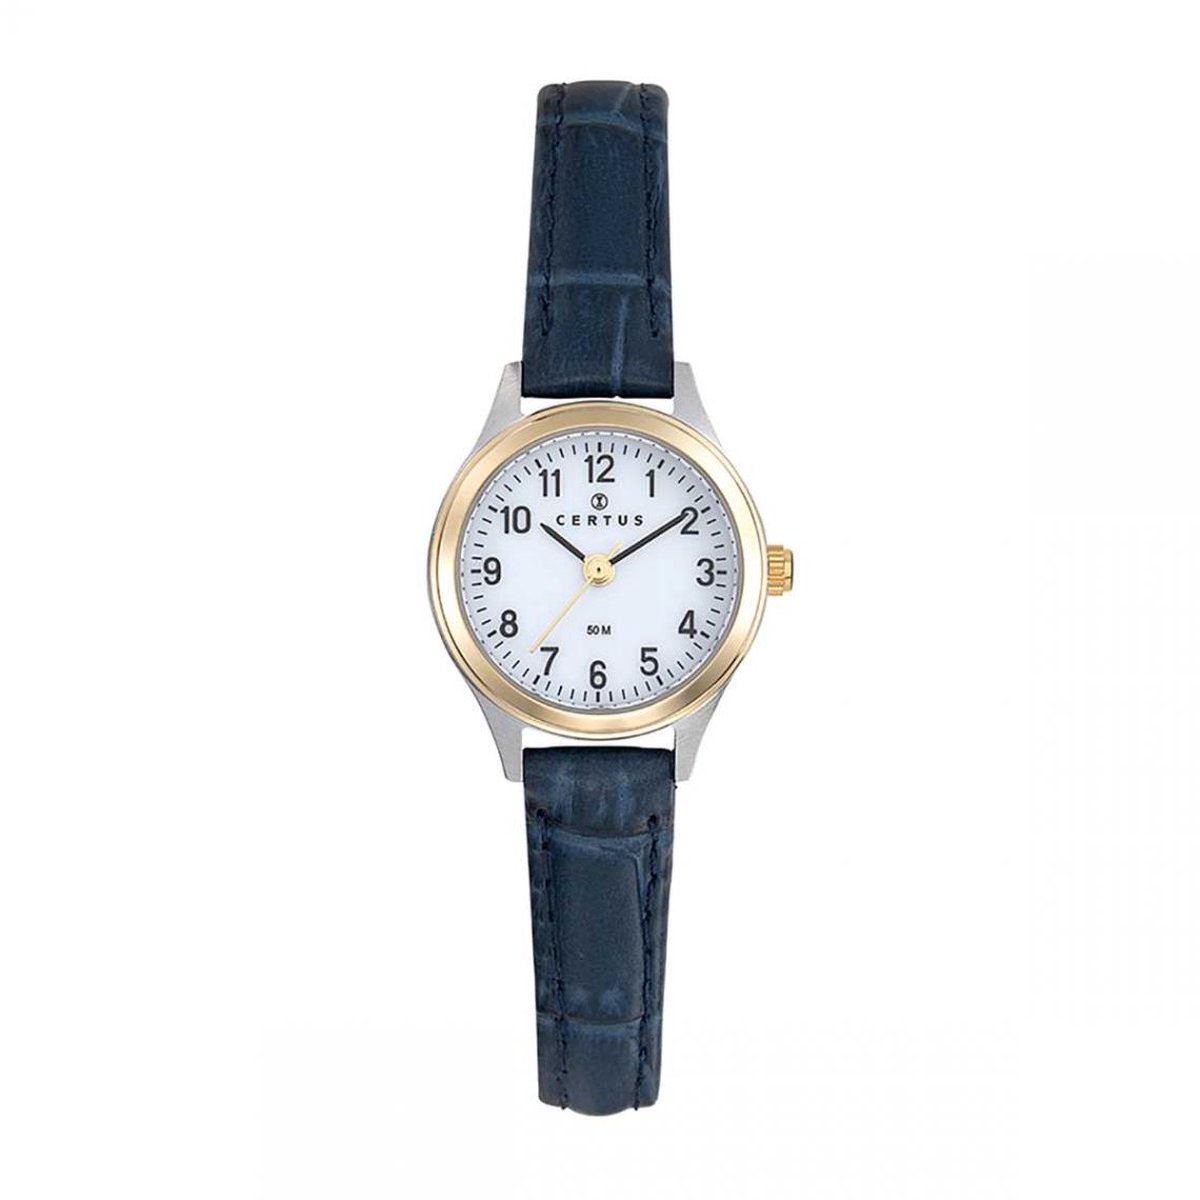 Certus-Duidelijk Dames horloge-Blauw lederen band-Bicolor